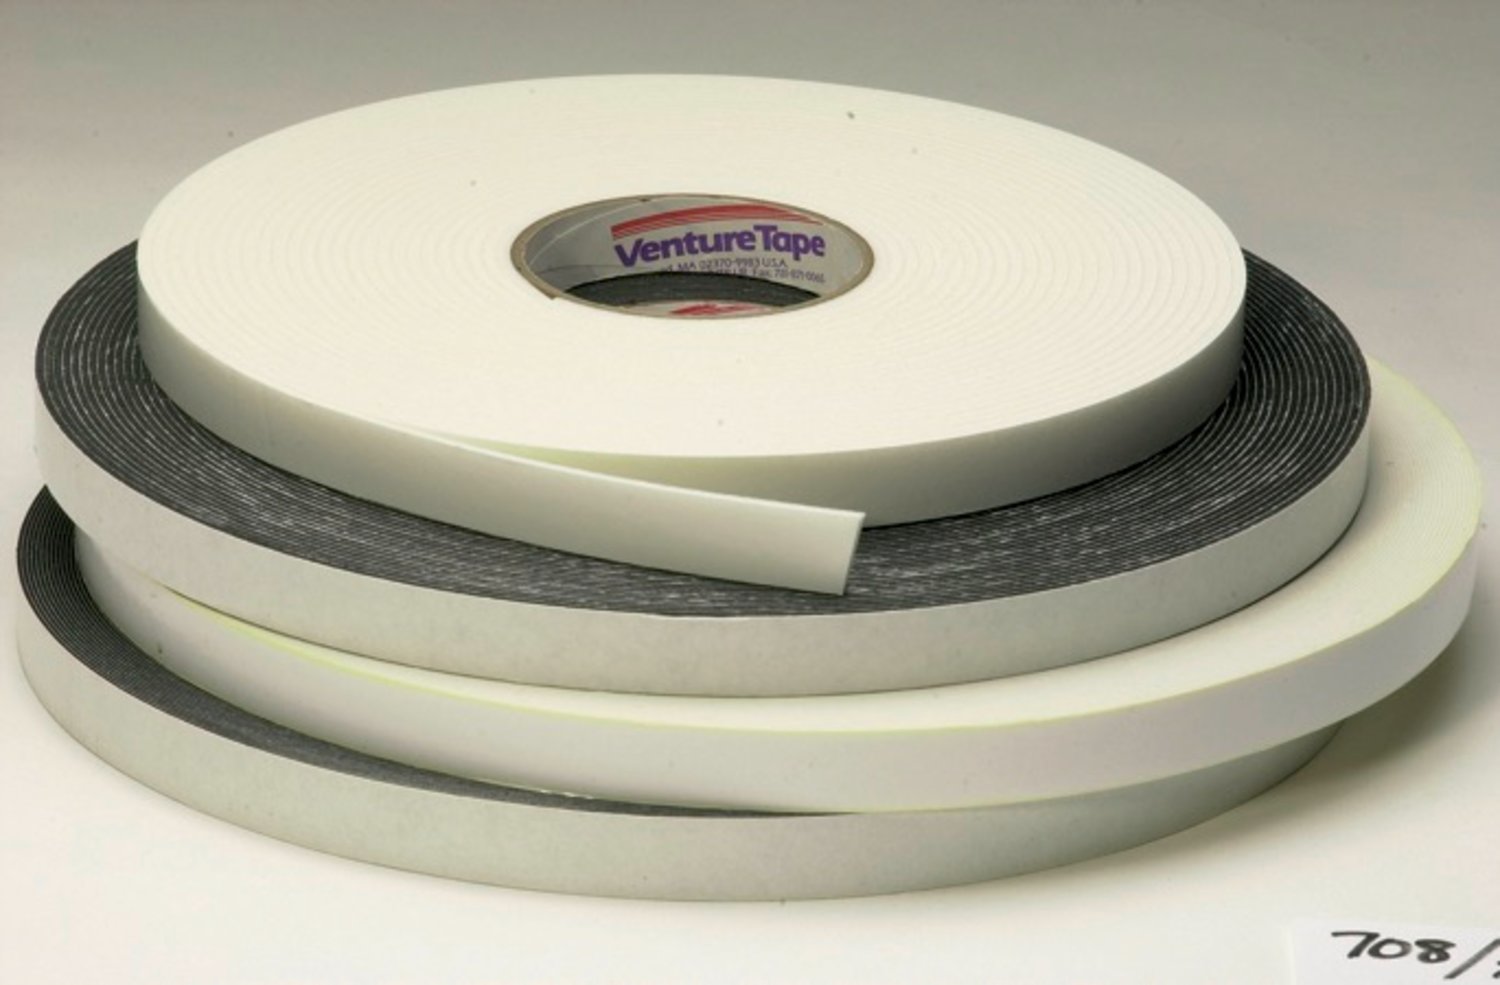 7010313560 - 3M Venture Tape Double Sided Polyethylene Foam Glazing Tape VG716,
Black, 1/4 in x 150 ft, 62 mil, 78 rolls per case